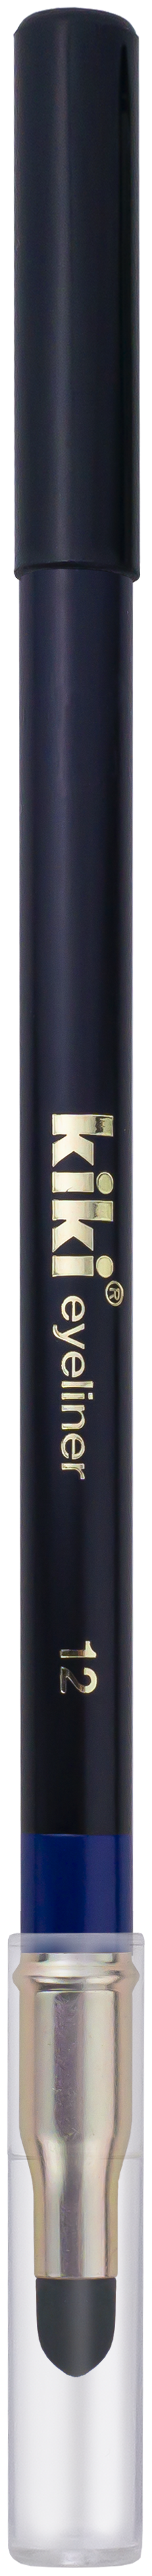 Карандаш для глаз KIKI Eyeliner, оттенок 12 насыщенно-синий c аппликатором для растушевки